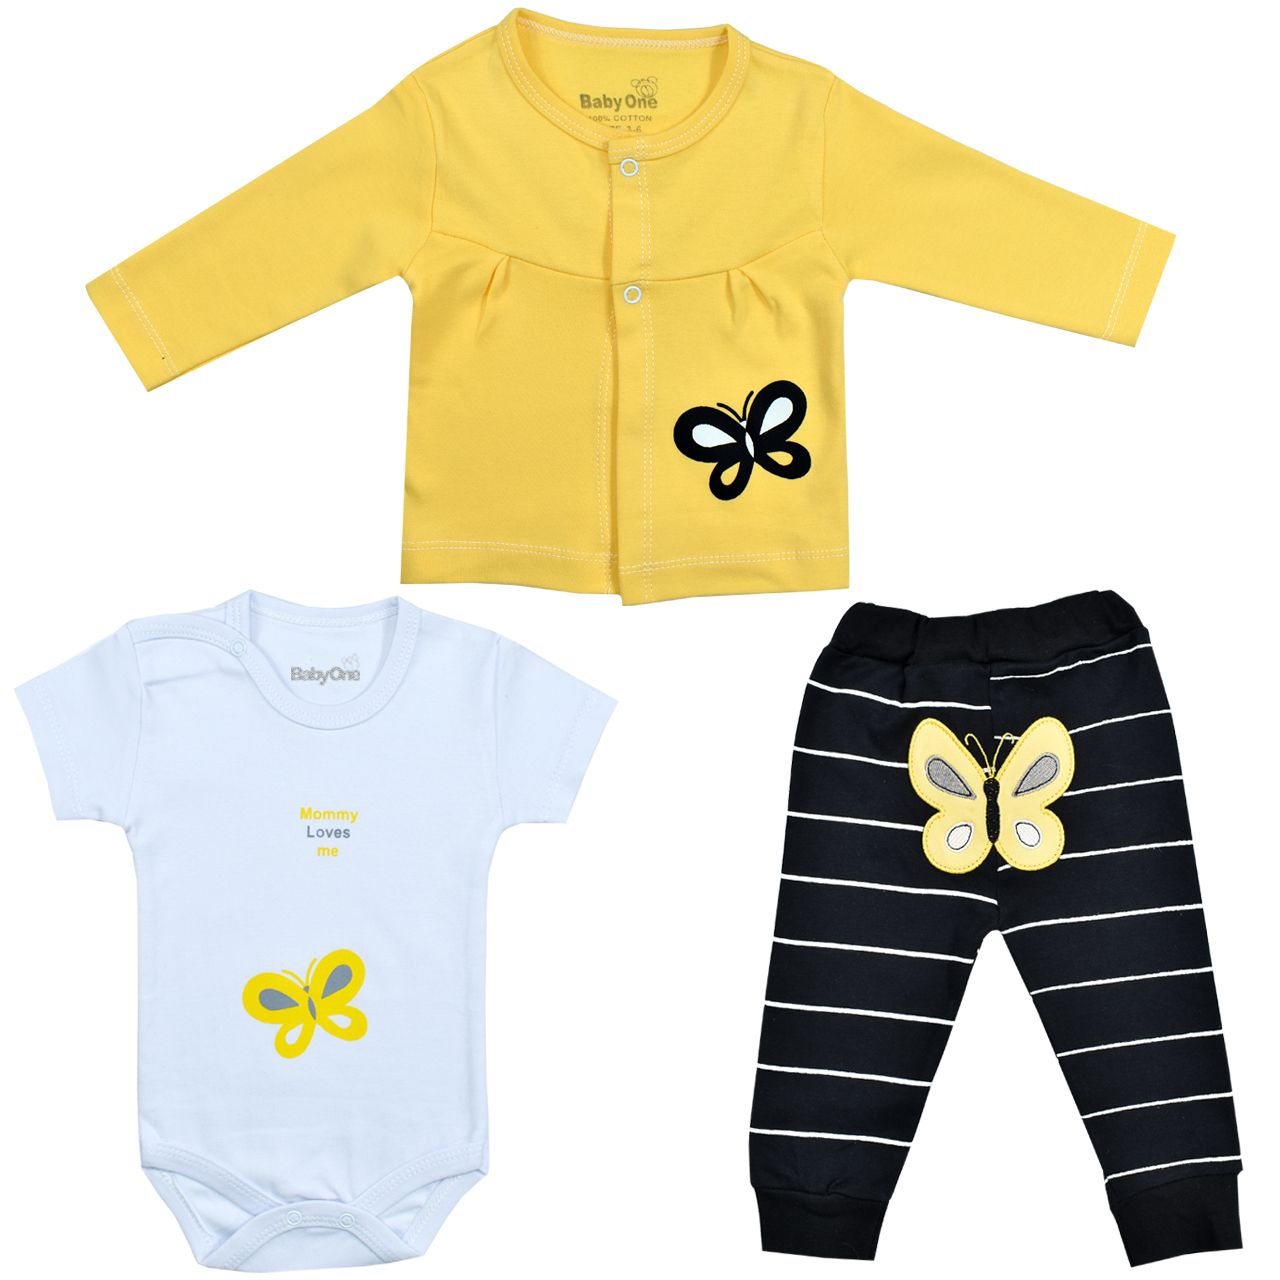 ست 3 تکه لباس نوزادی بی بی وان مدل پروانه رنگ زرد